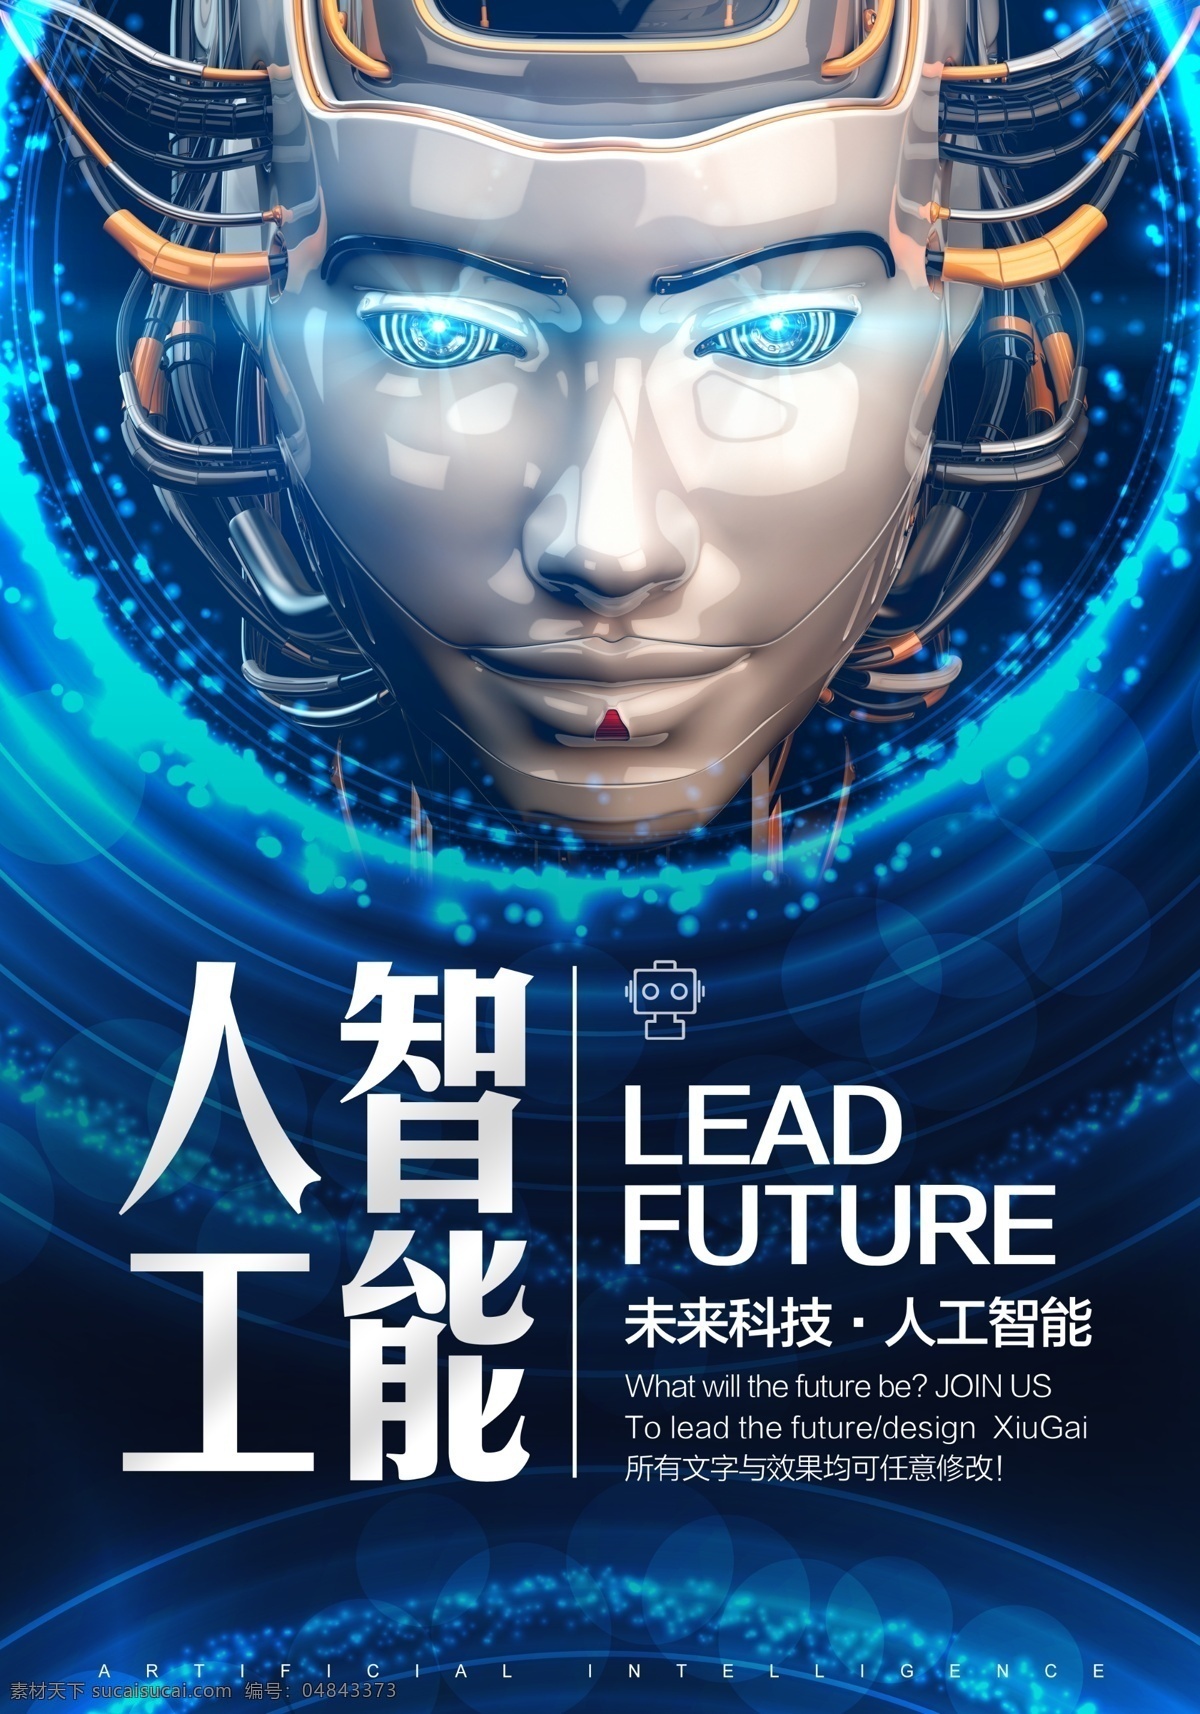 蓝色 光圈 人工智能 海报 机器人 科技海报展板 机器人海报 梦幻科技 几何梦幻 机器人时代 引领未来科技 人与机器 虚拟现实 vr体验